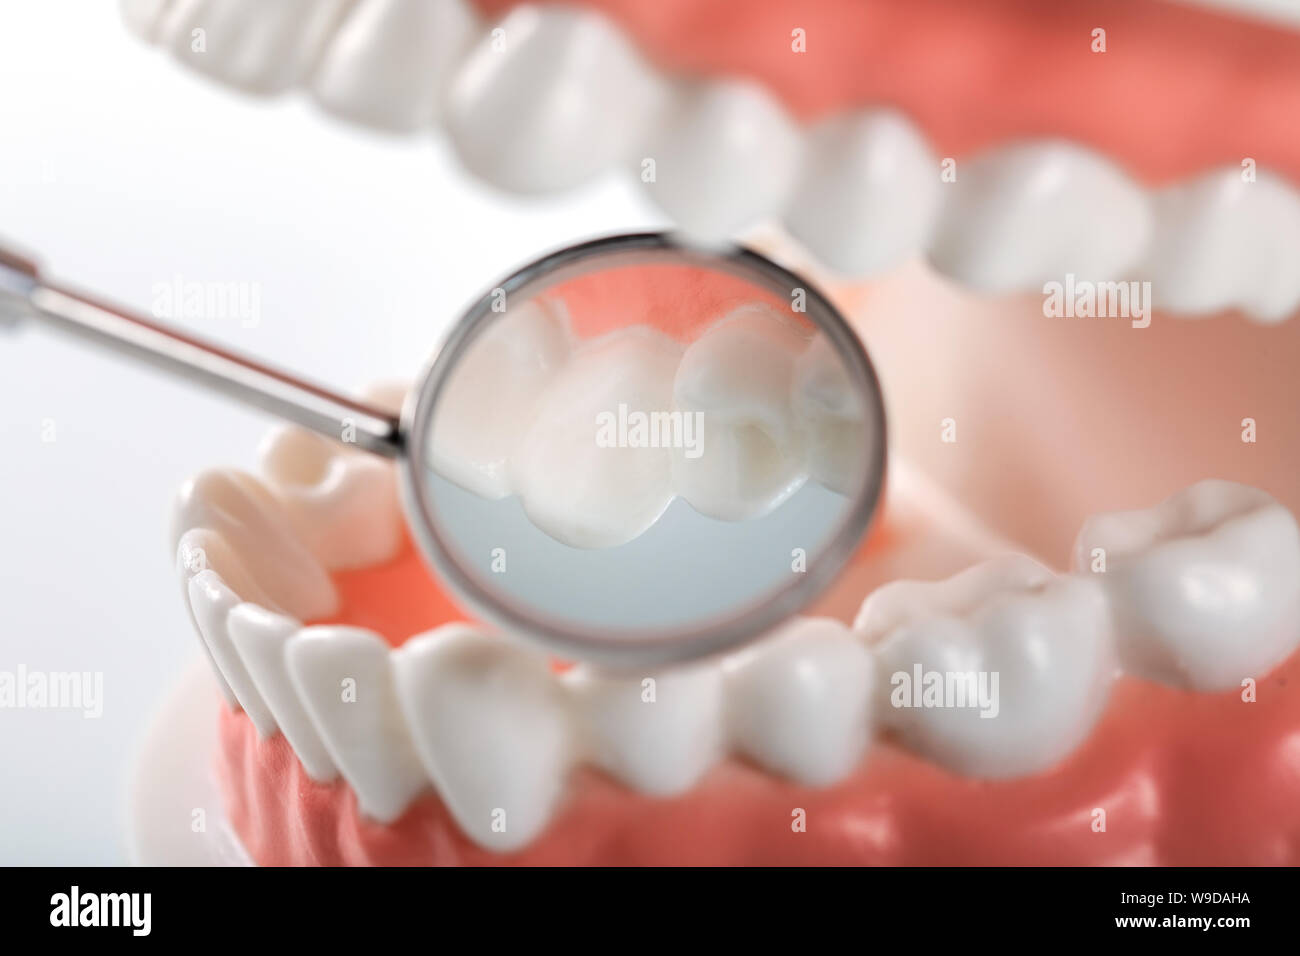 La higiene oral - acercamiento de espejo dental dentro de los dientes modelo Foto de stock